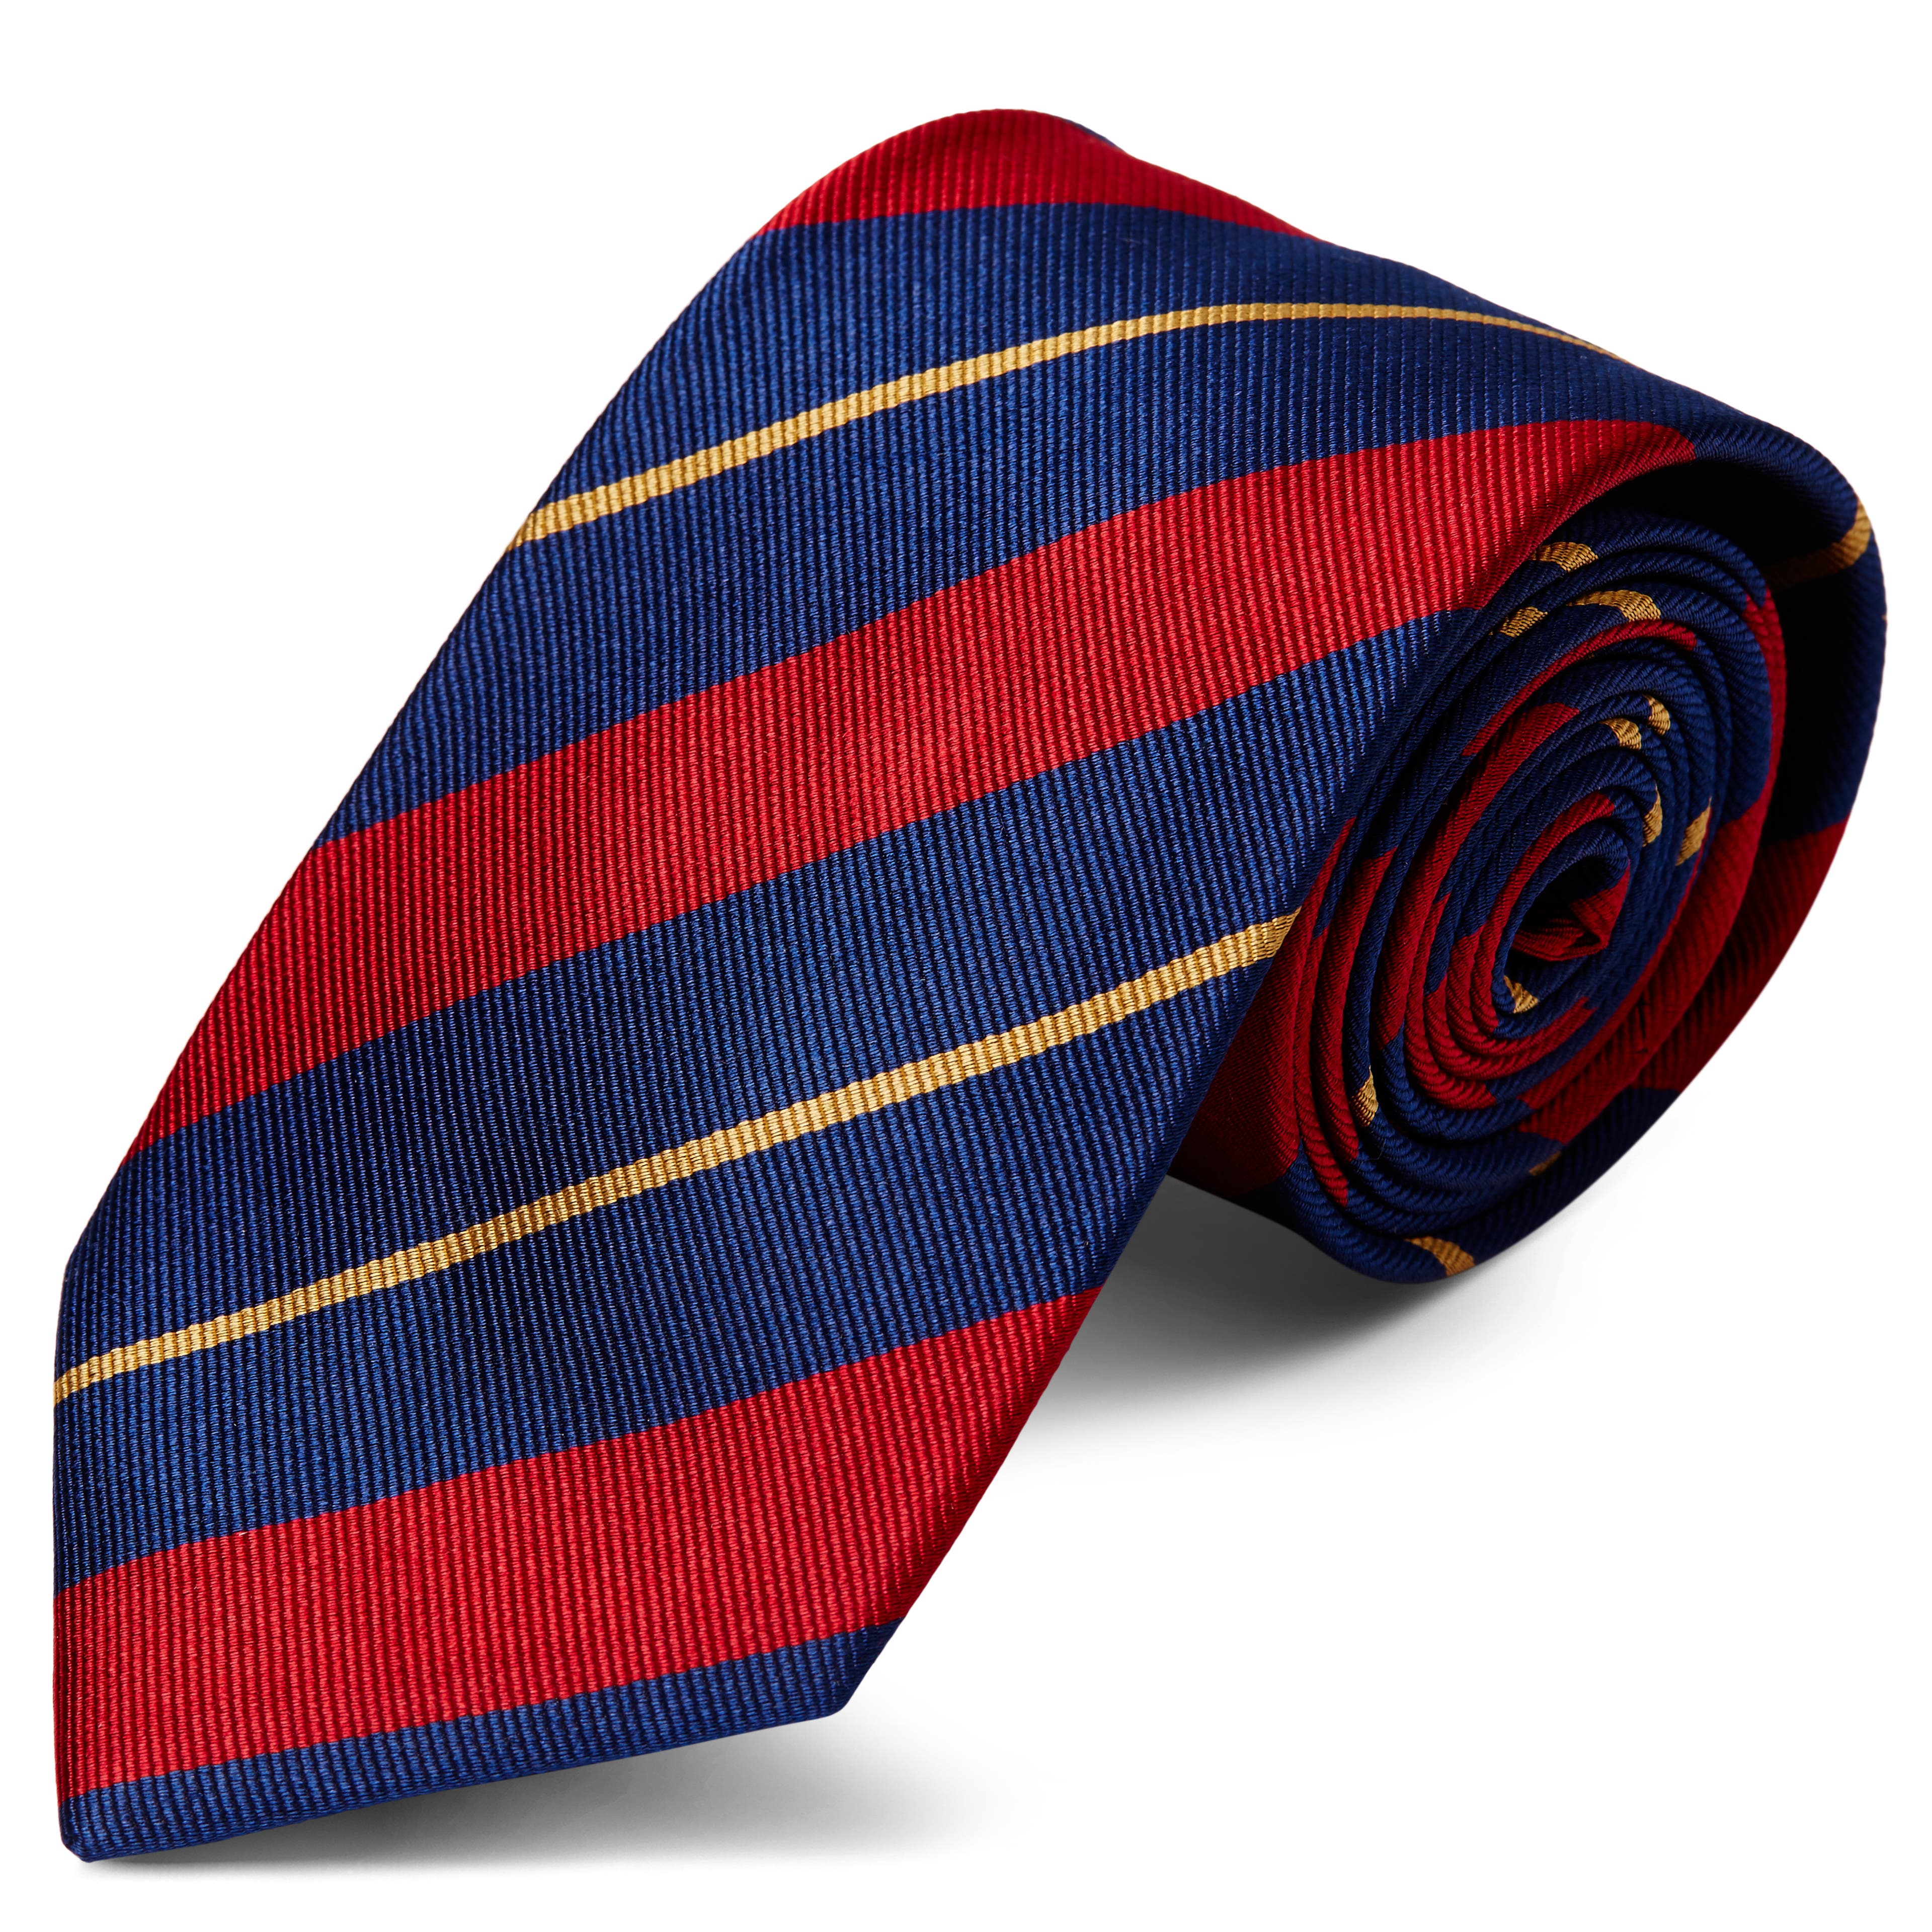 Ciemnogranatowy krawat jedwabny w czerwono-złote paski 8 cm